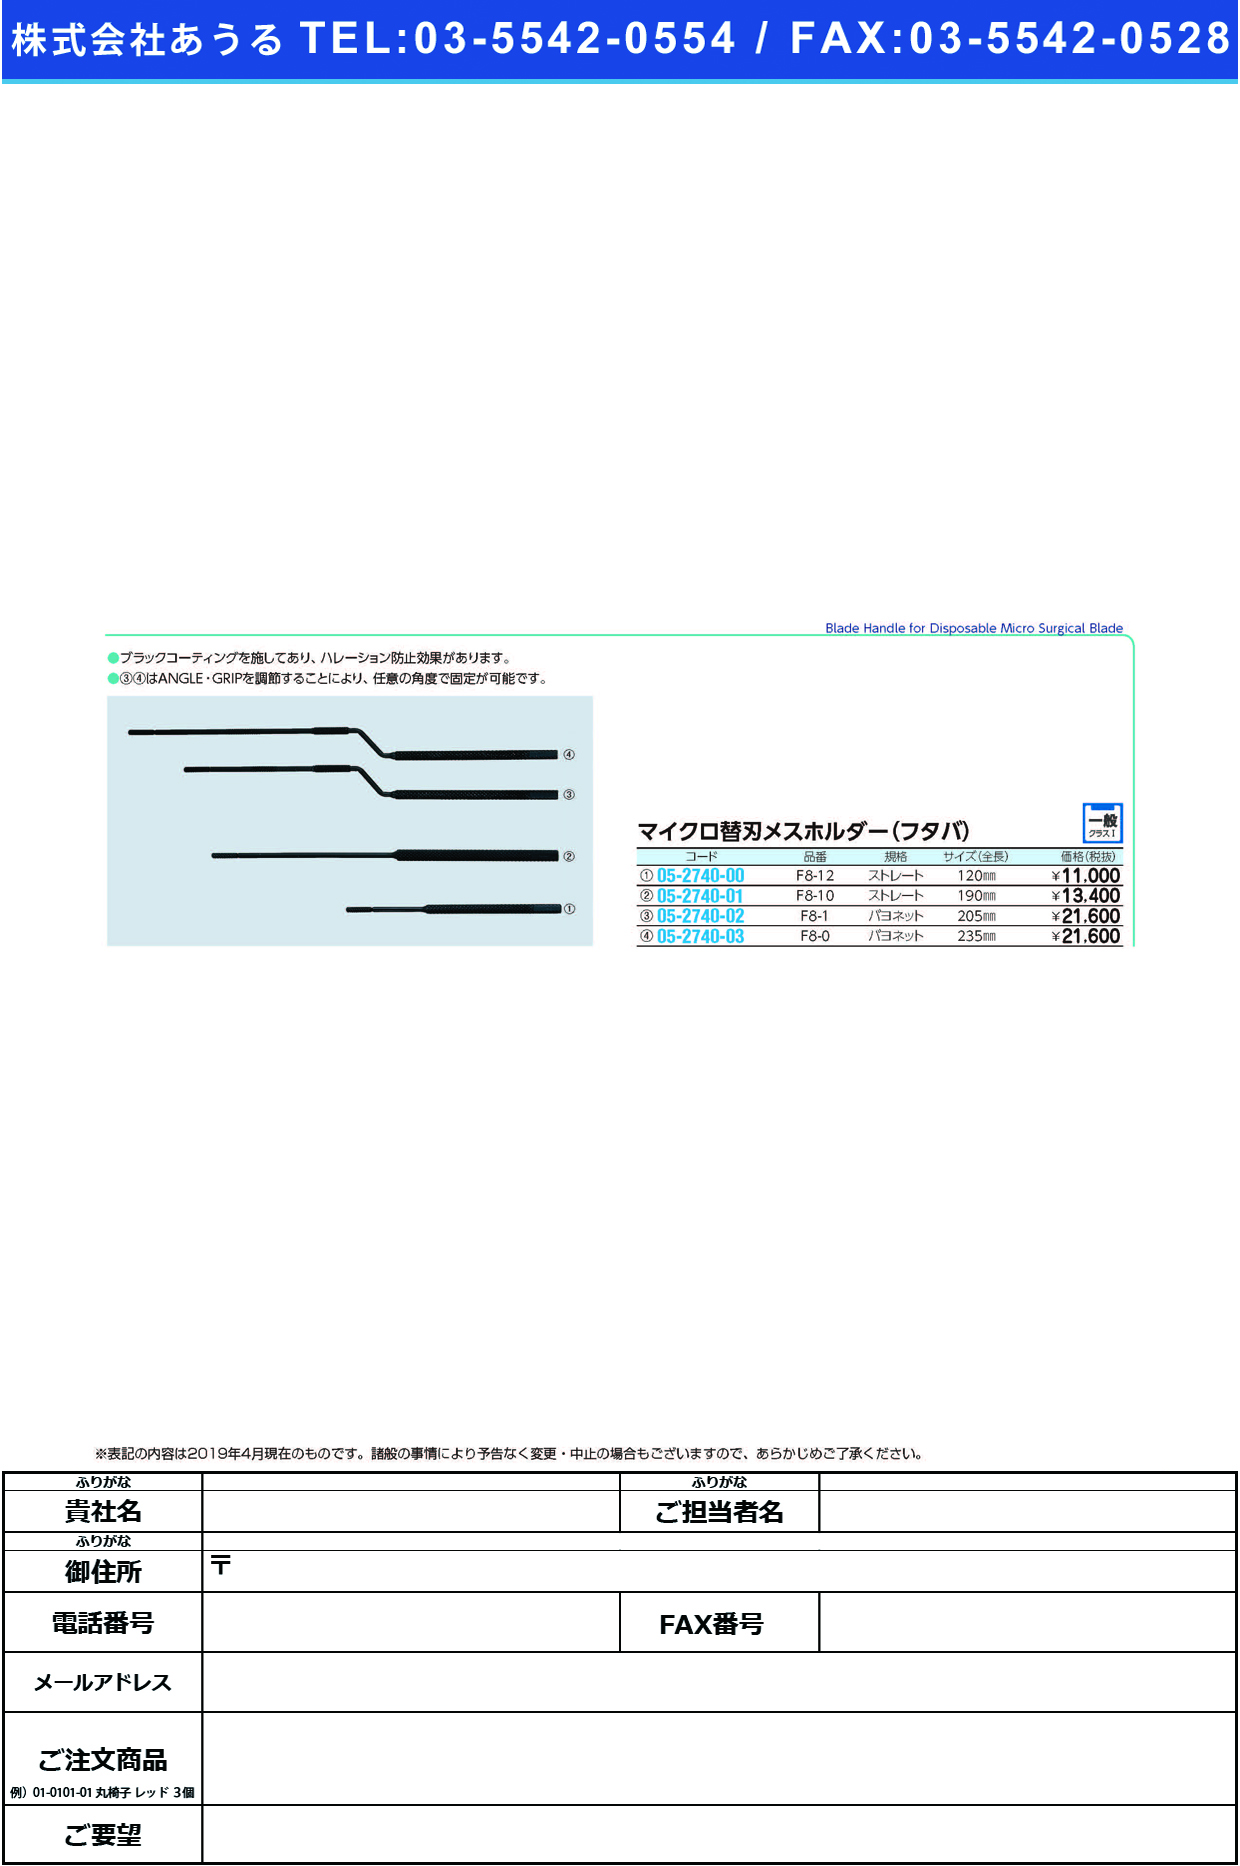 (05-2740-03)マイクロ替刃ホルダー（フタバ） F8-0ｶﾞﾀ ﾏｲｸﾛｶｴﾊﾞﾎﾙﾀﾞｰ(ﾌﾀﾊﾞ)【1本単位】【2019年カタログ商品】